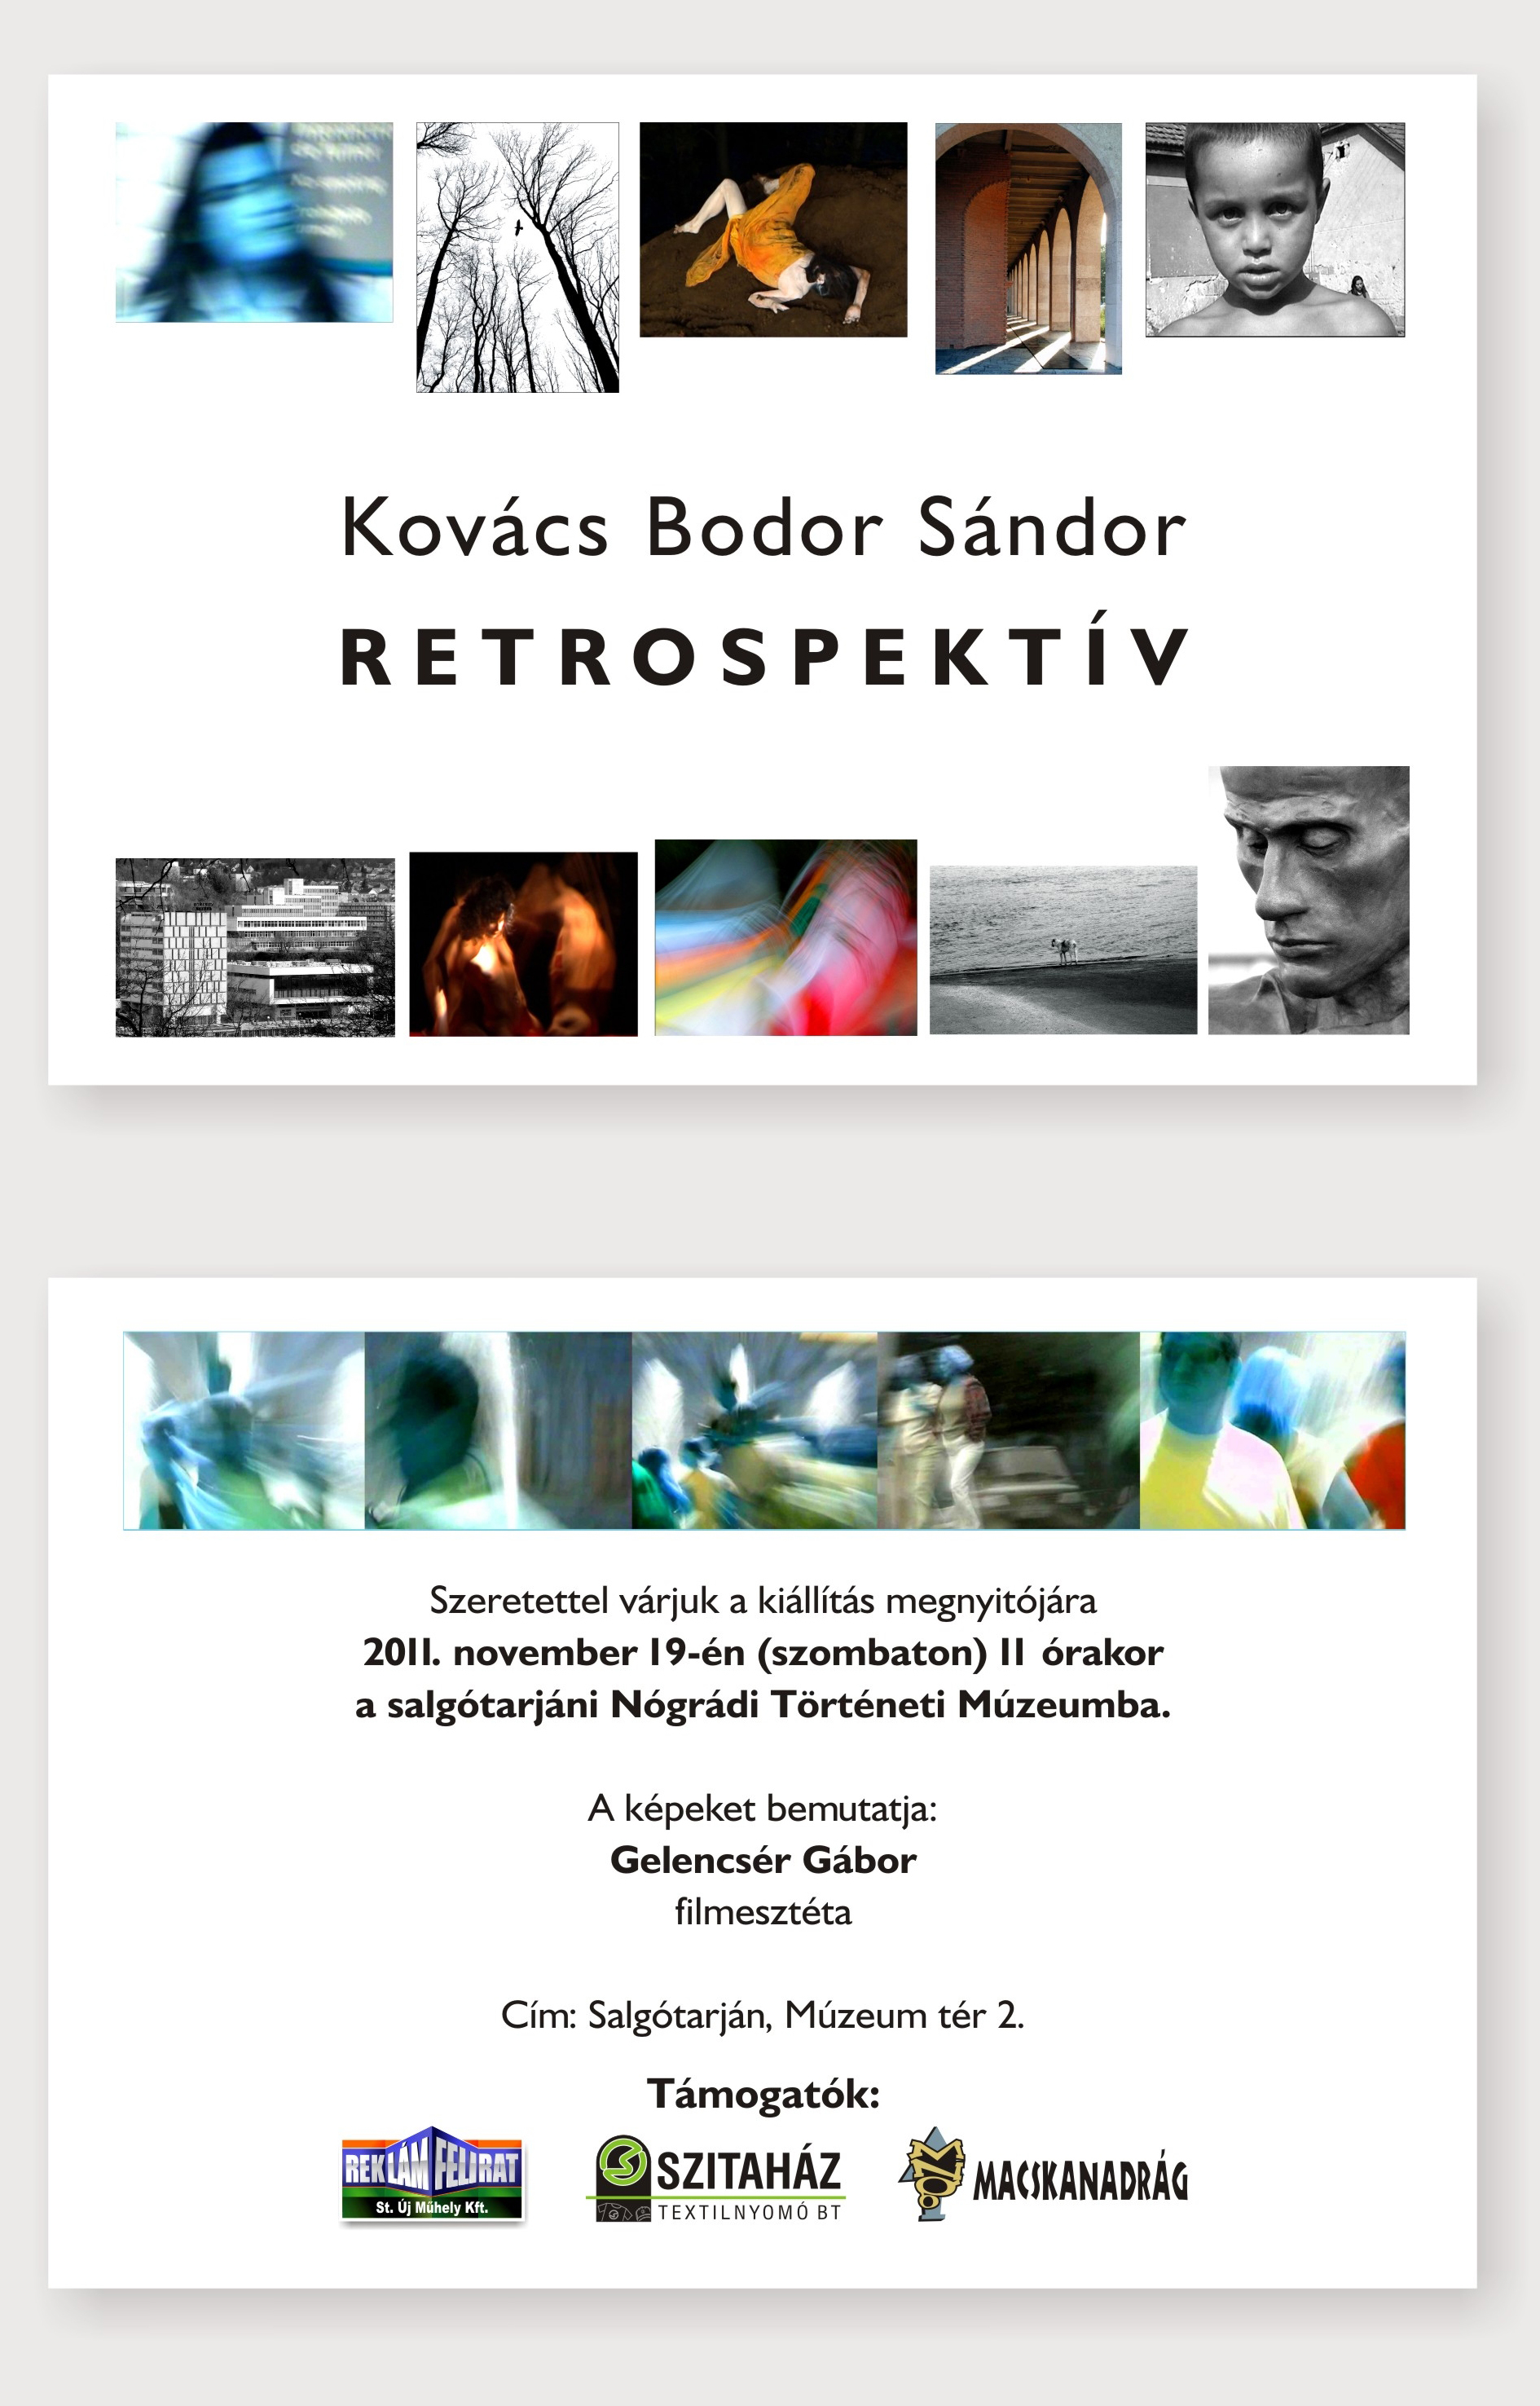 Kovács Bodor Sándor retrospektív fotókiállítása